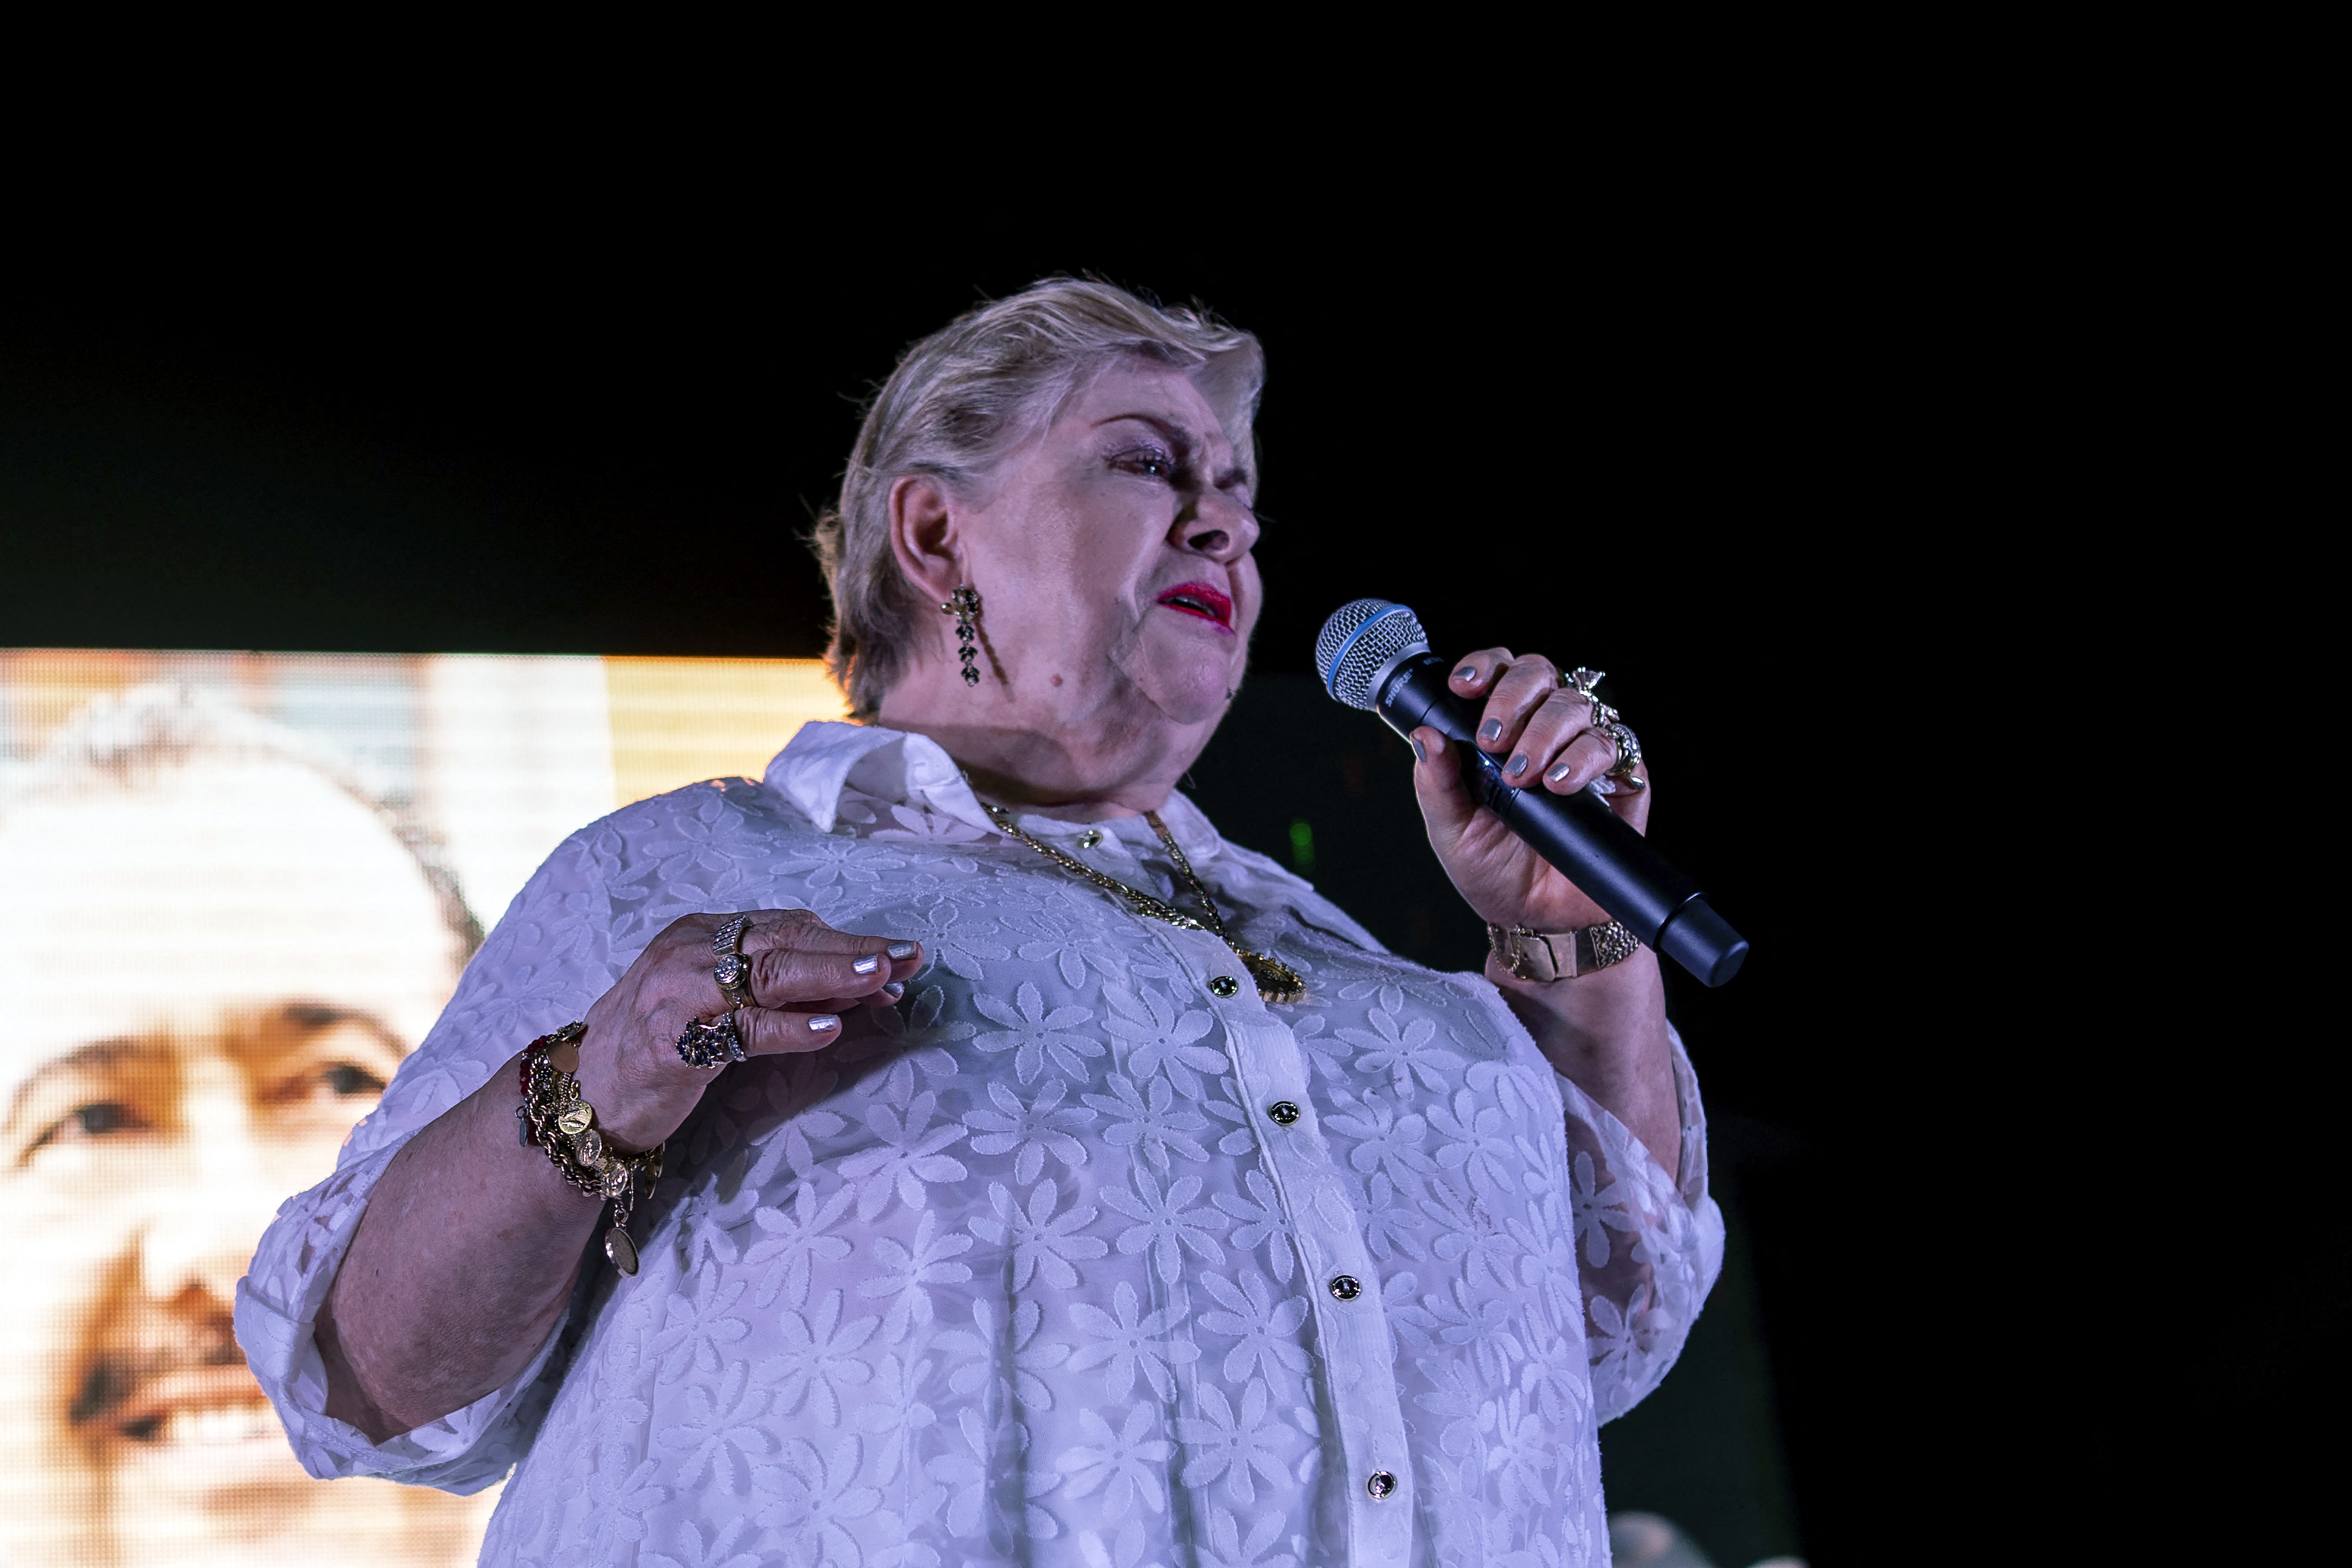 El mánager de Paquita la del Barrio reveló nuevos detalles sobre el estado de salud de la cantante, tras cancelar un concierto por presentar dolores en la ciática. (Foto Prensa Libre: AFP)